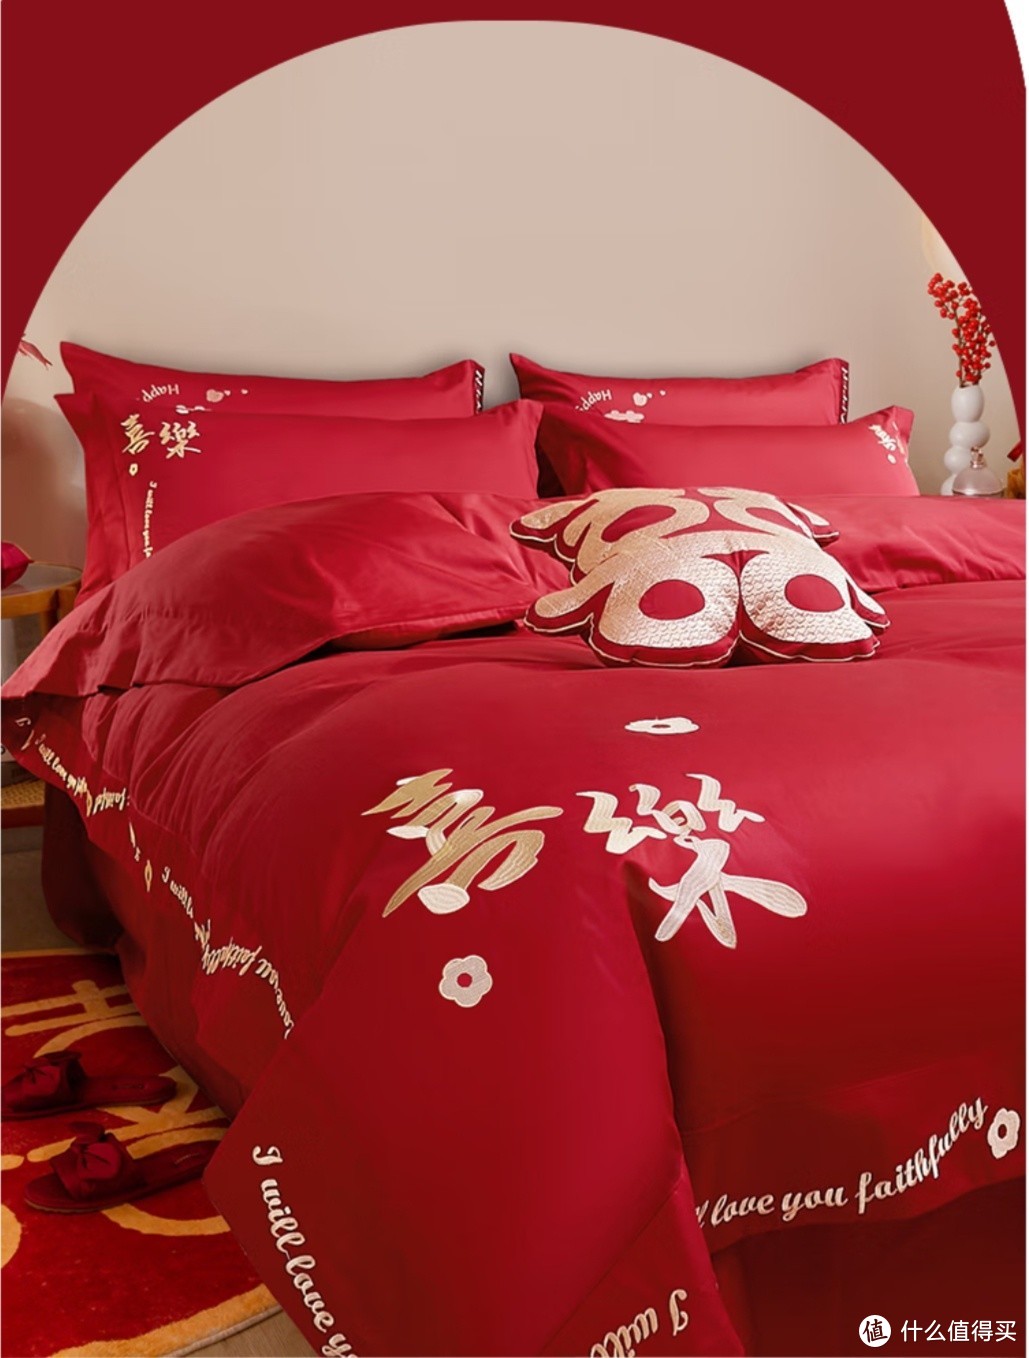 婚礼为什么要用红色四件套？婚床上摆放“枣子、花生、桂圆、莲子”的具体寓意吗？